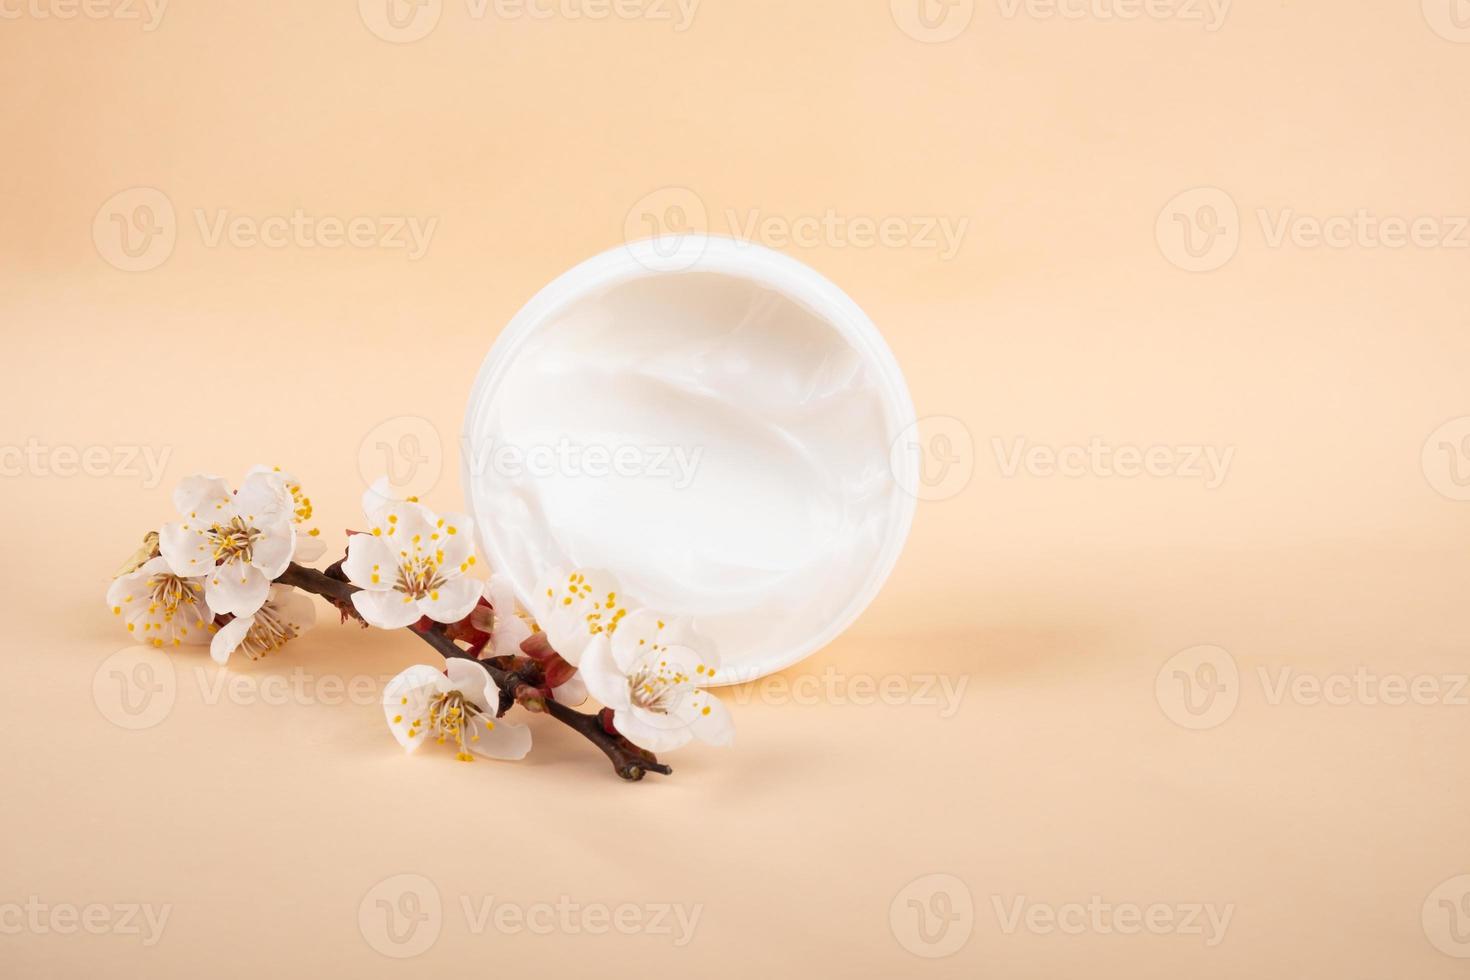 schoonheid en huidverzorging, crèmecosmetica met lentegeur van bloemen op een delicate beige achtergrond foto